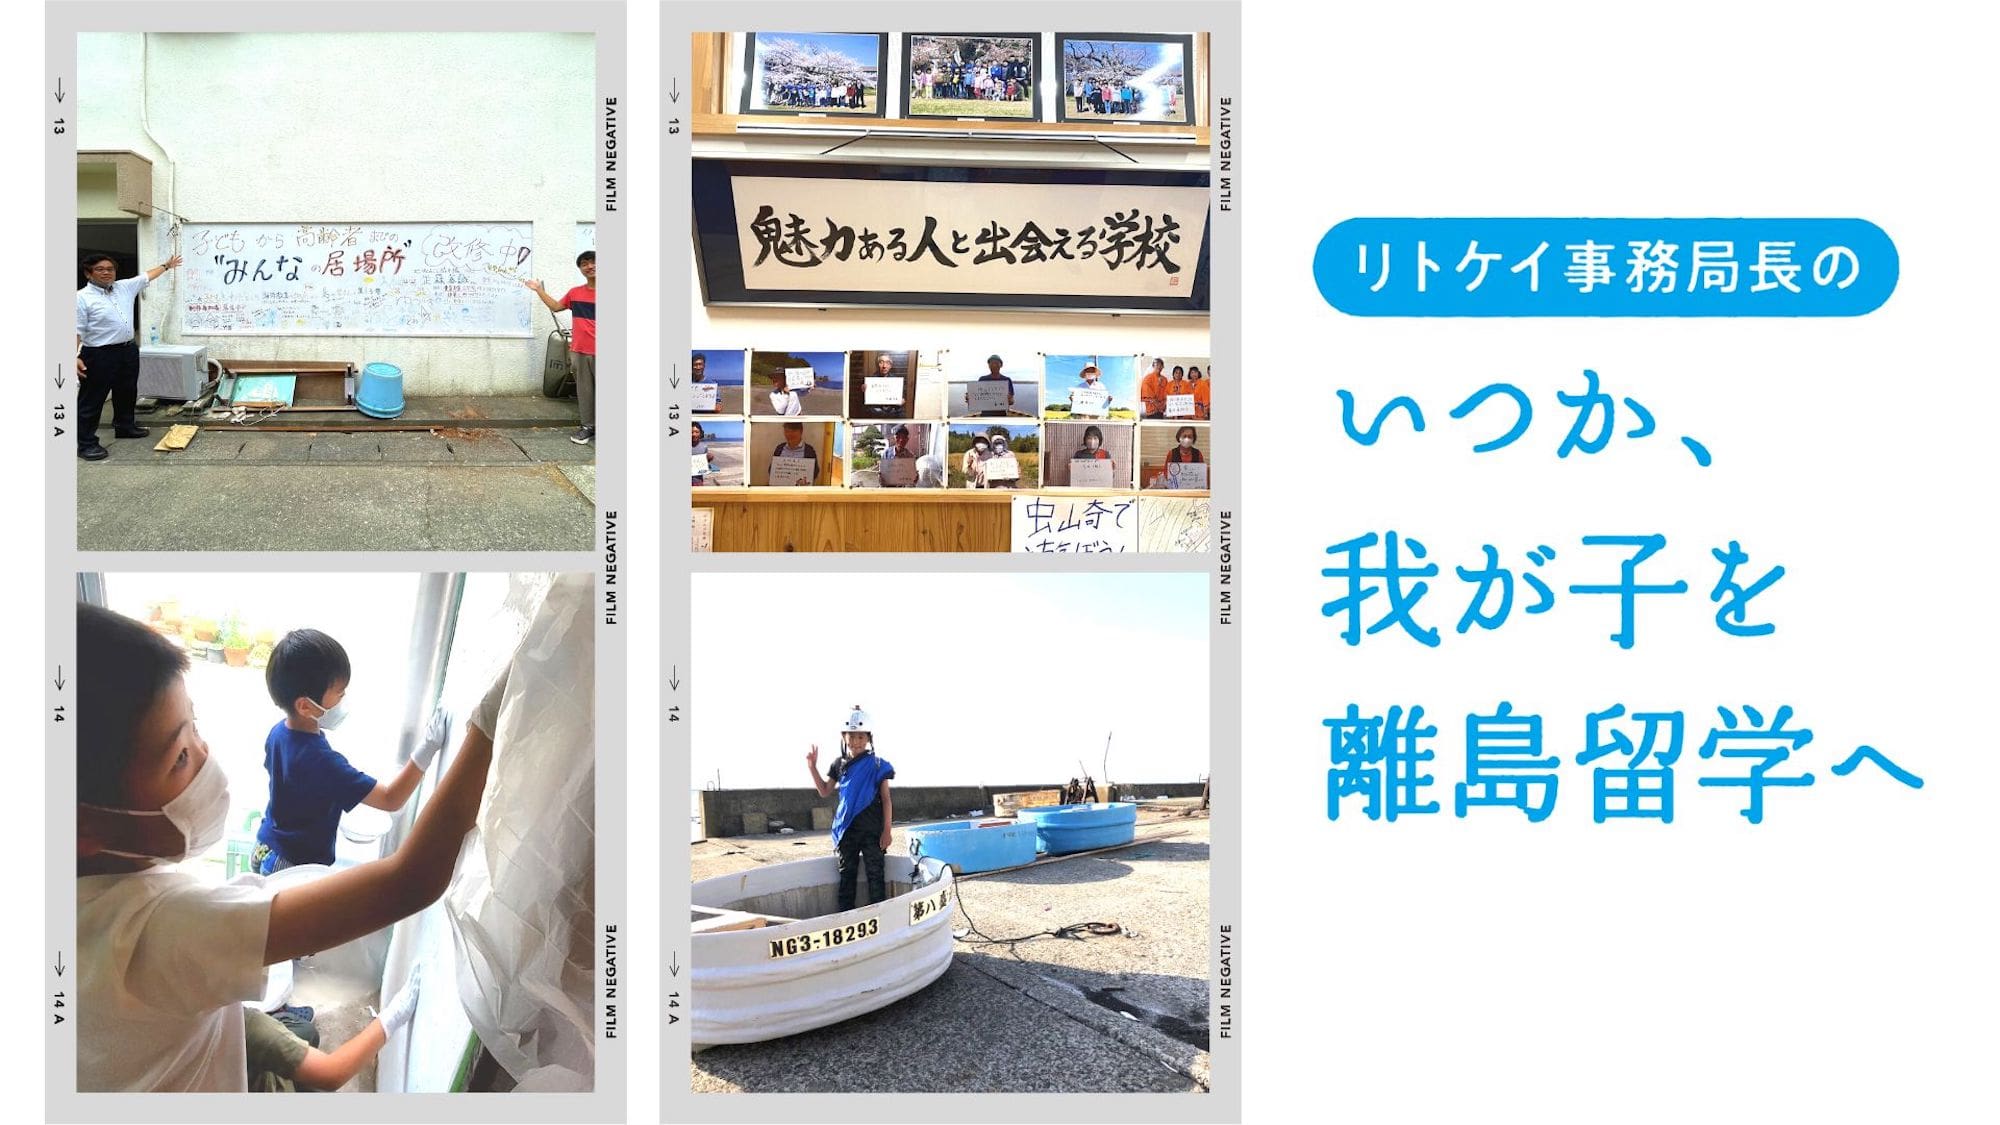 つくろう 島の未来 Ritokei 離島経済新聞